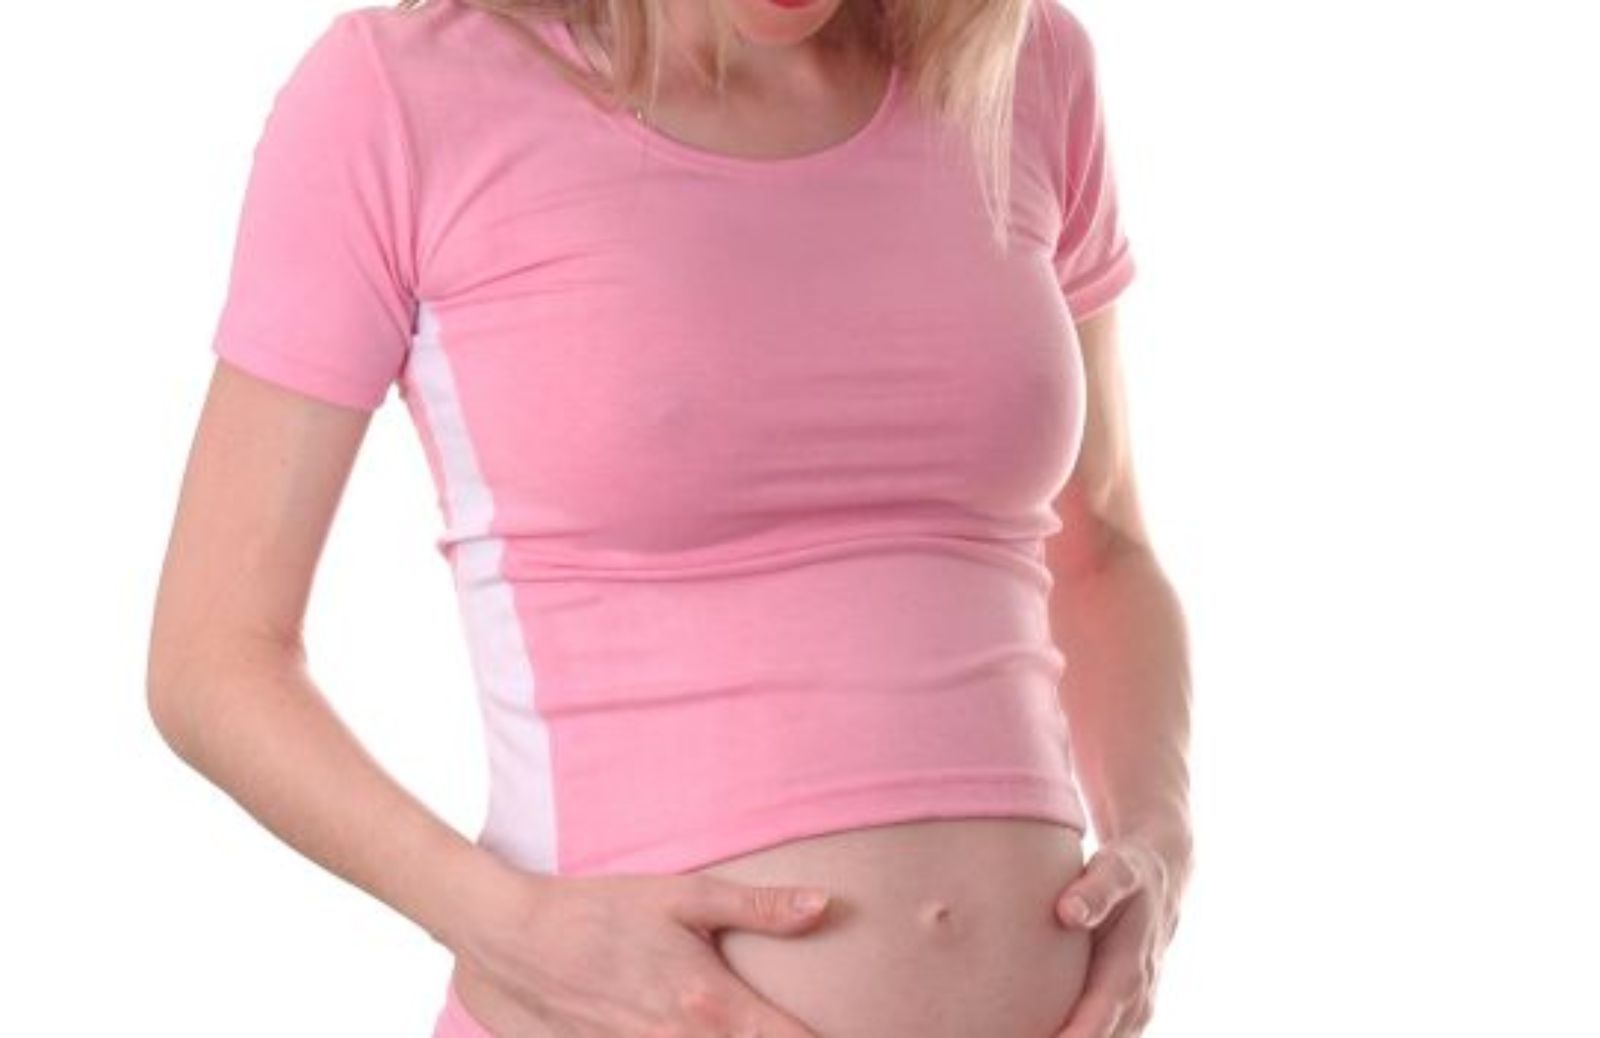 Come fare sport in gravidanza: camminata (III trimestre)